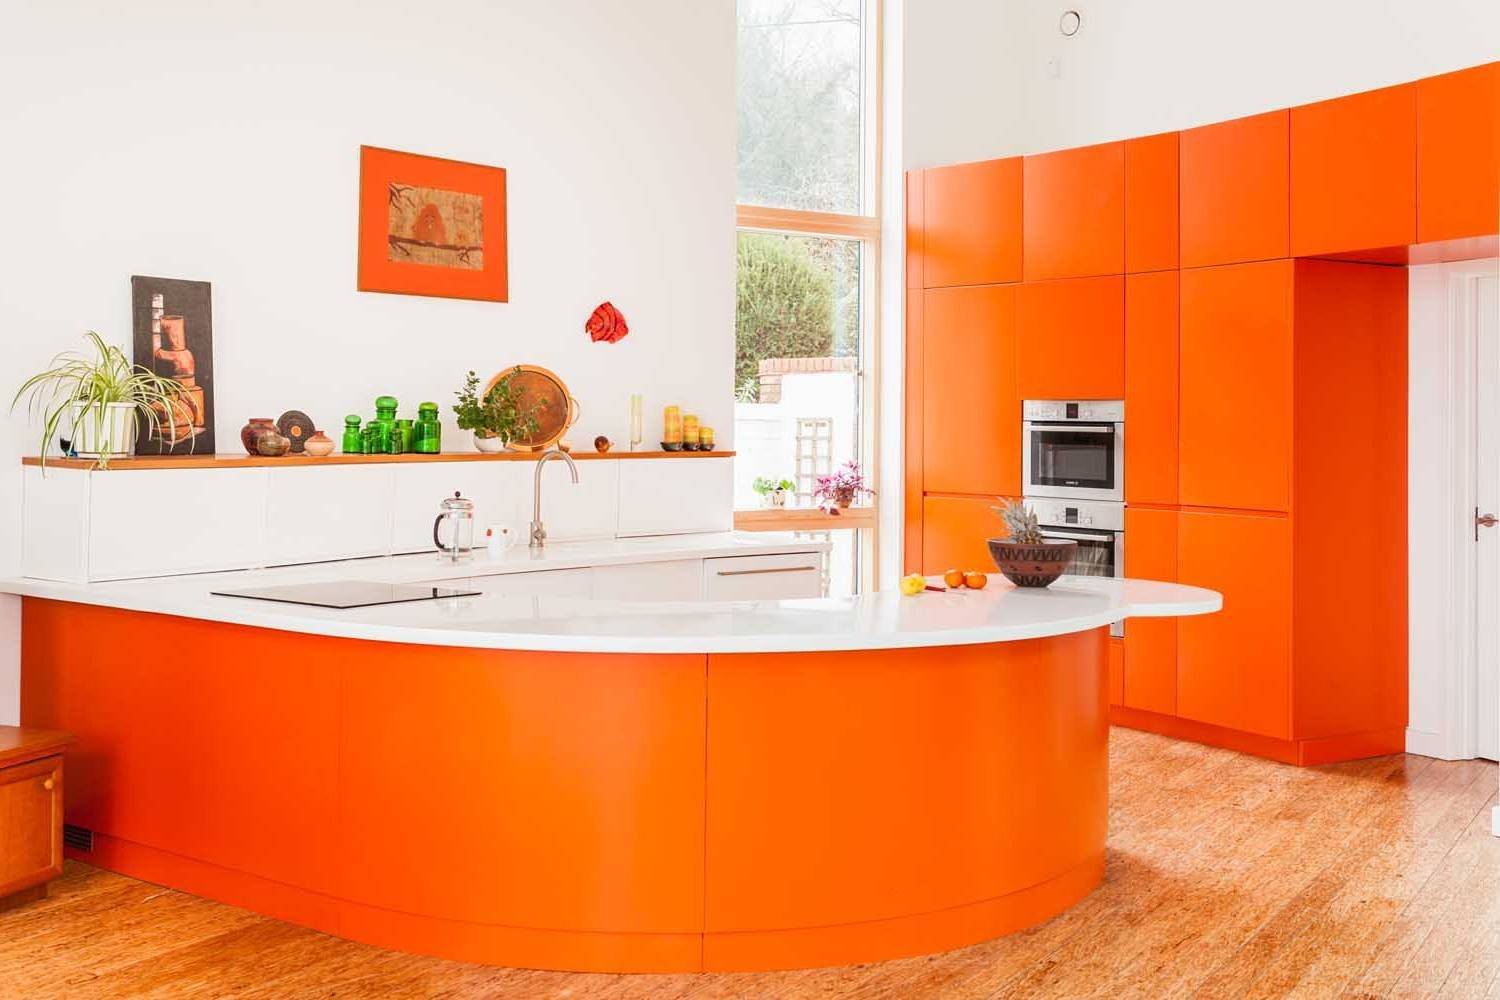 Какие шторы подойдут к оранжевой кухне - идеи оформления интерьера
какие шторы подойдут к оранжевой кухне - идеи оформления интерьера